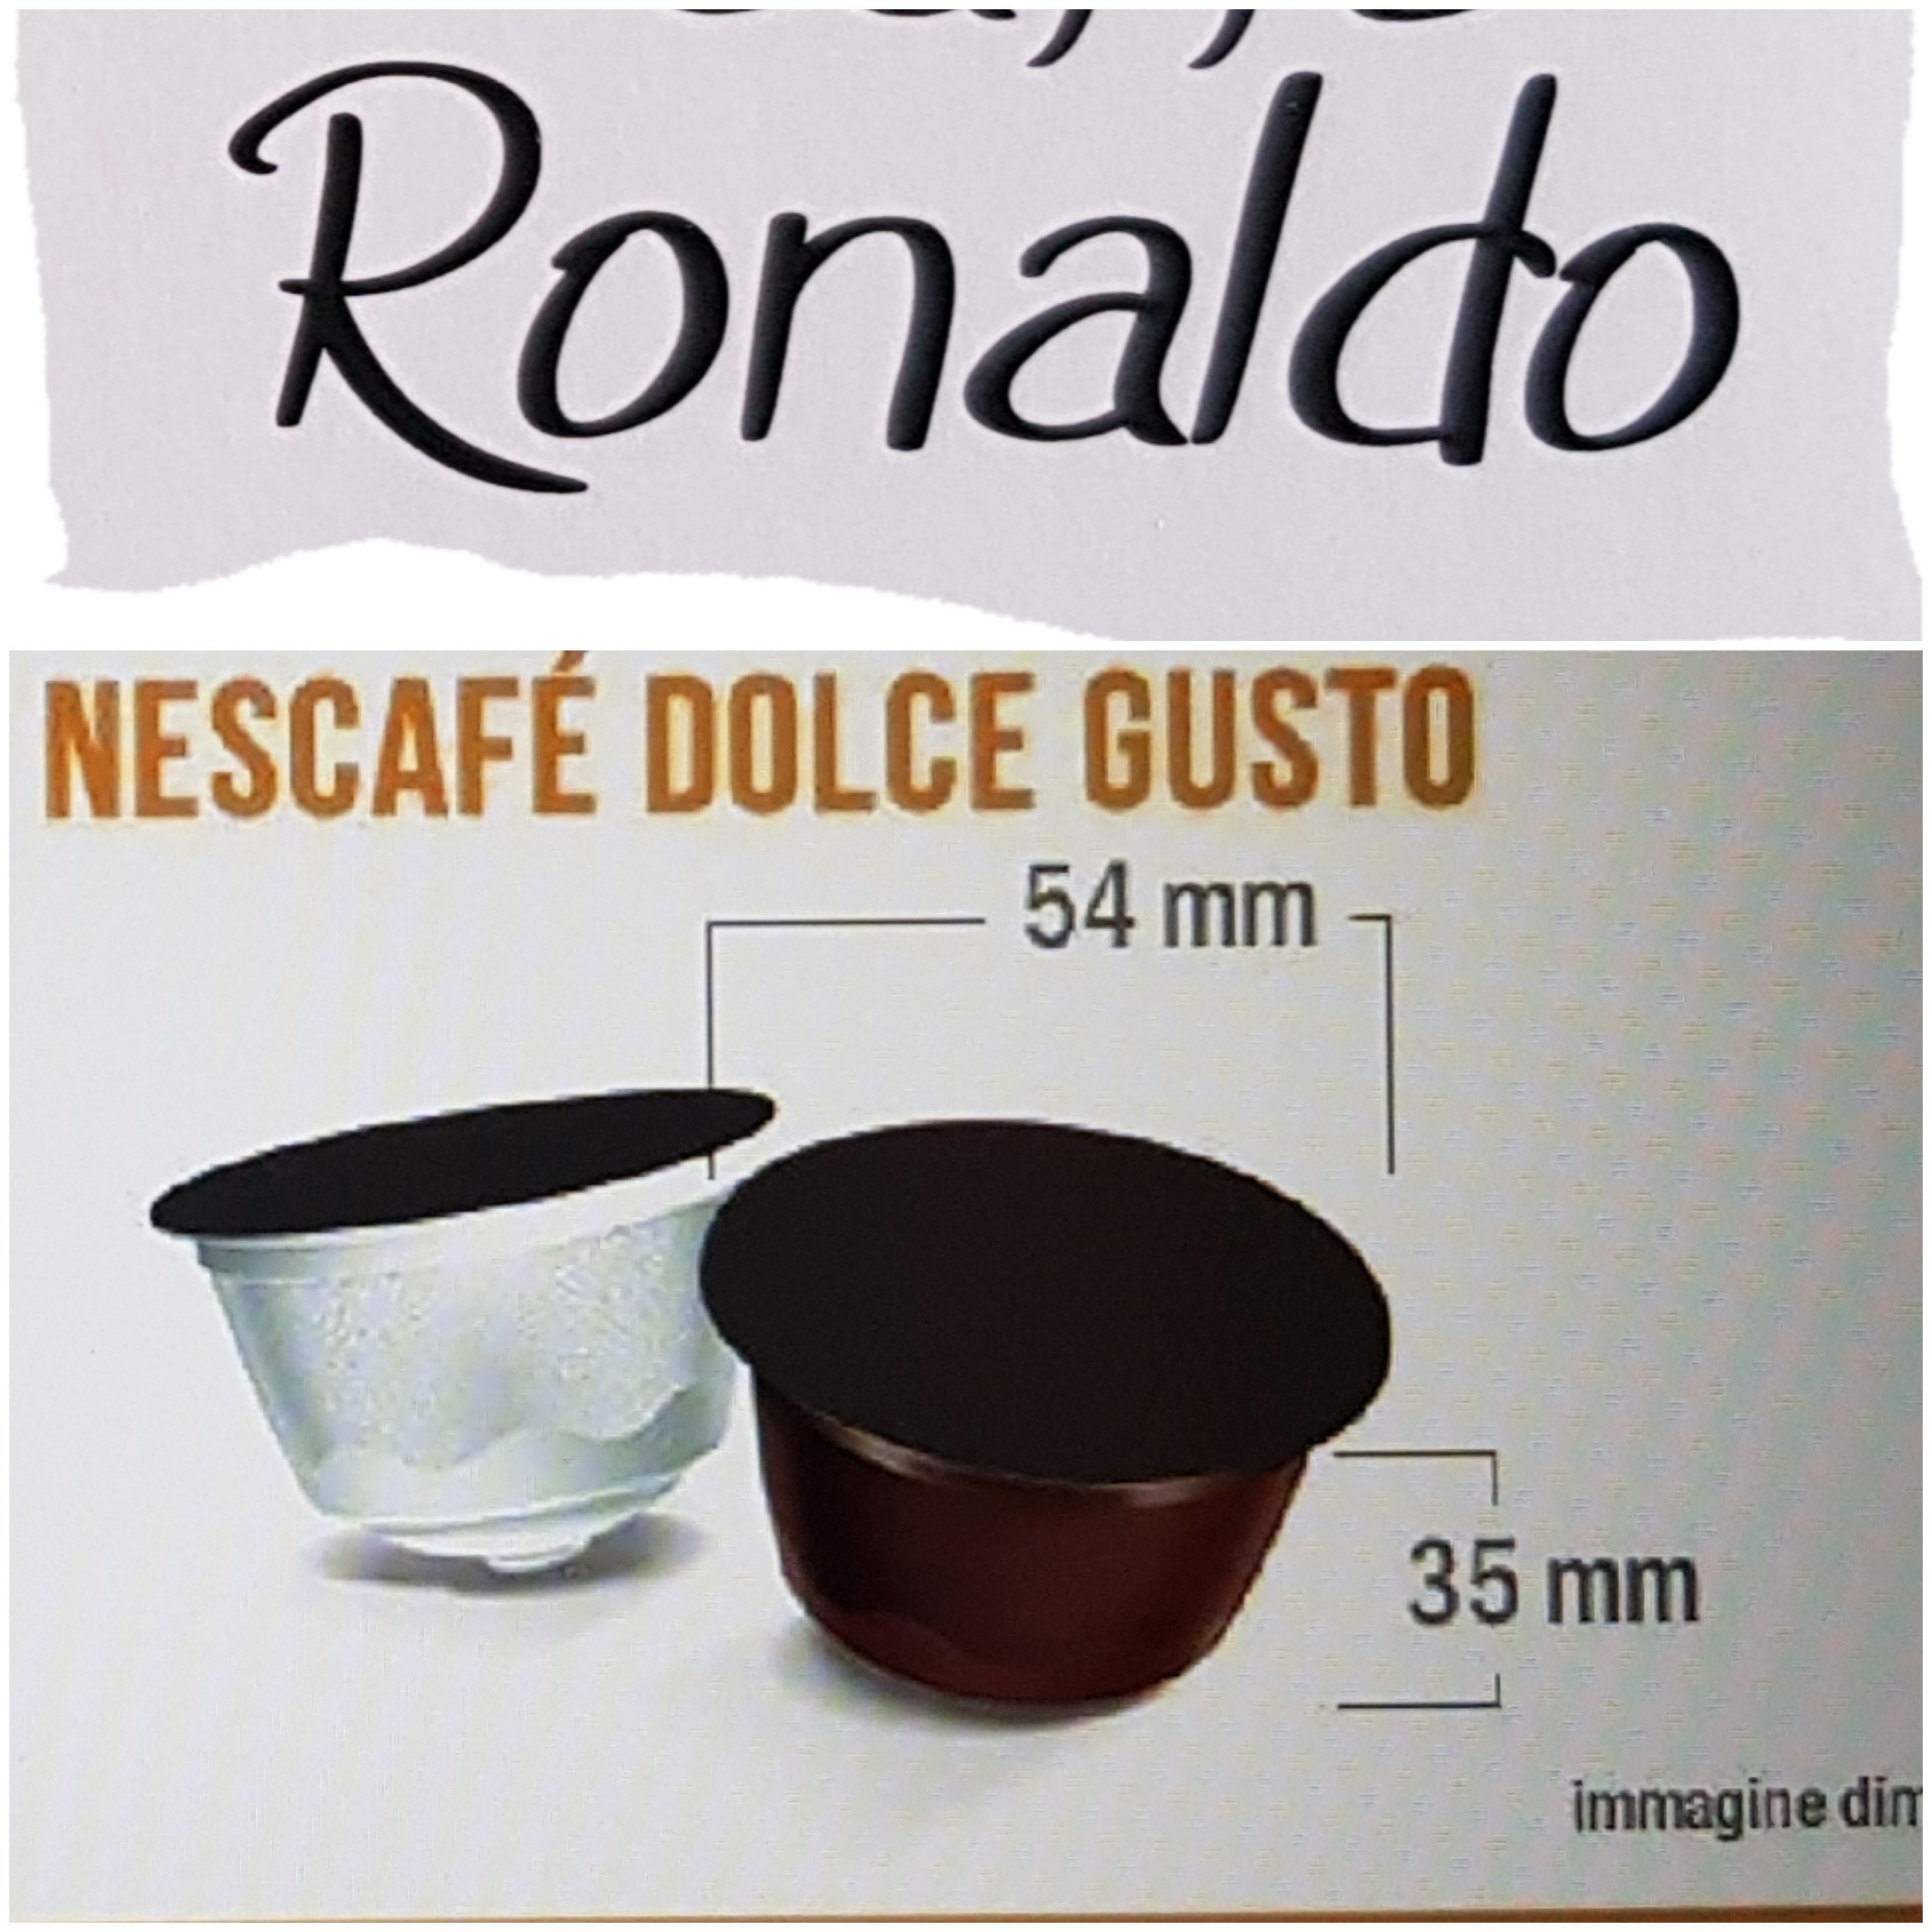 Caffè Ronaldo 96 DOLCE GUSTO Se paghi 2, kit regalo - Sped. o consegna a Palermo incl. - € 0,26 cap